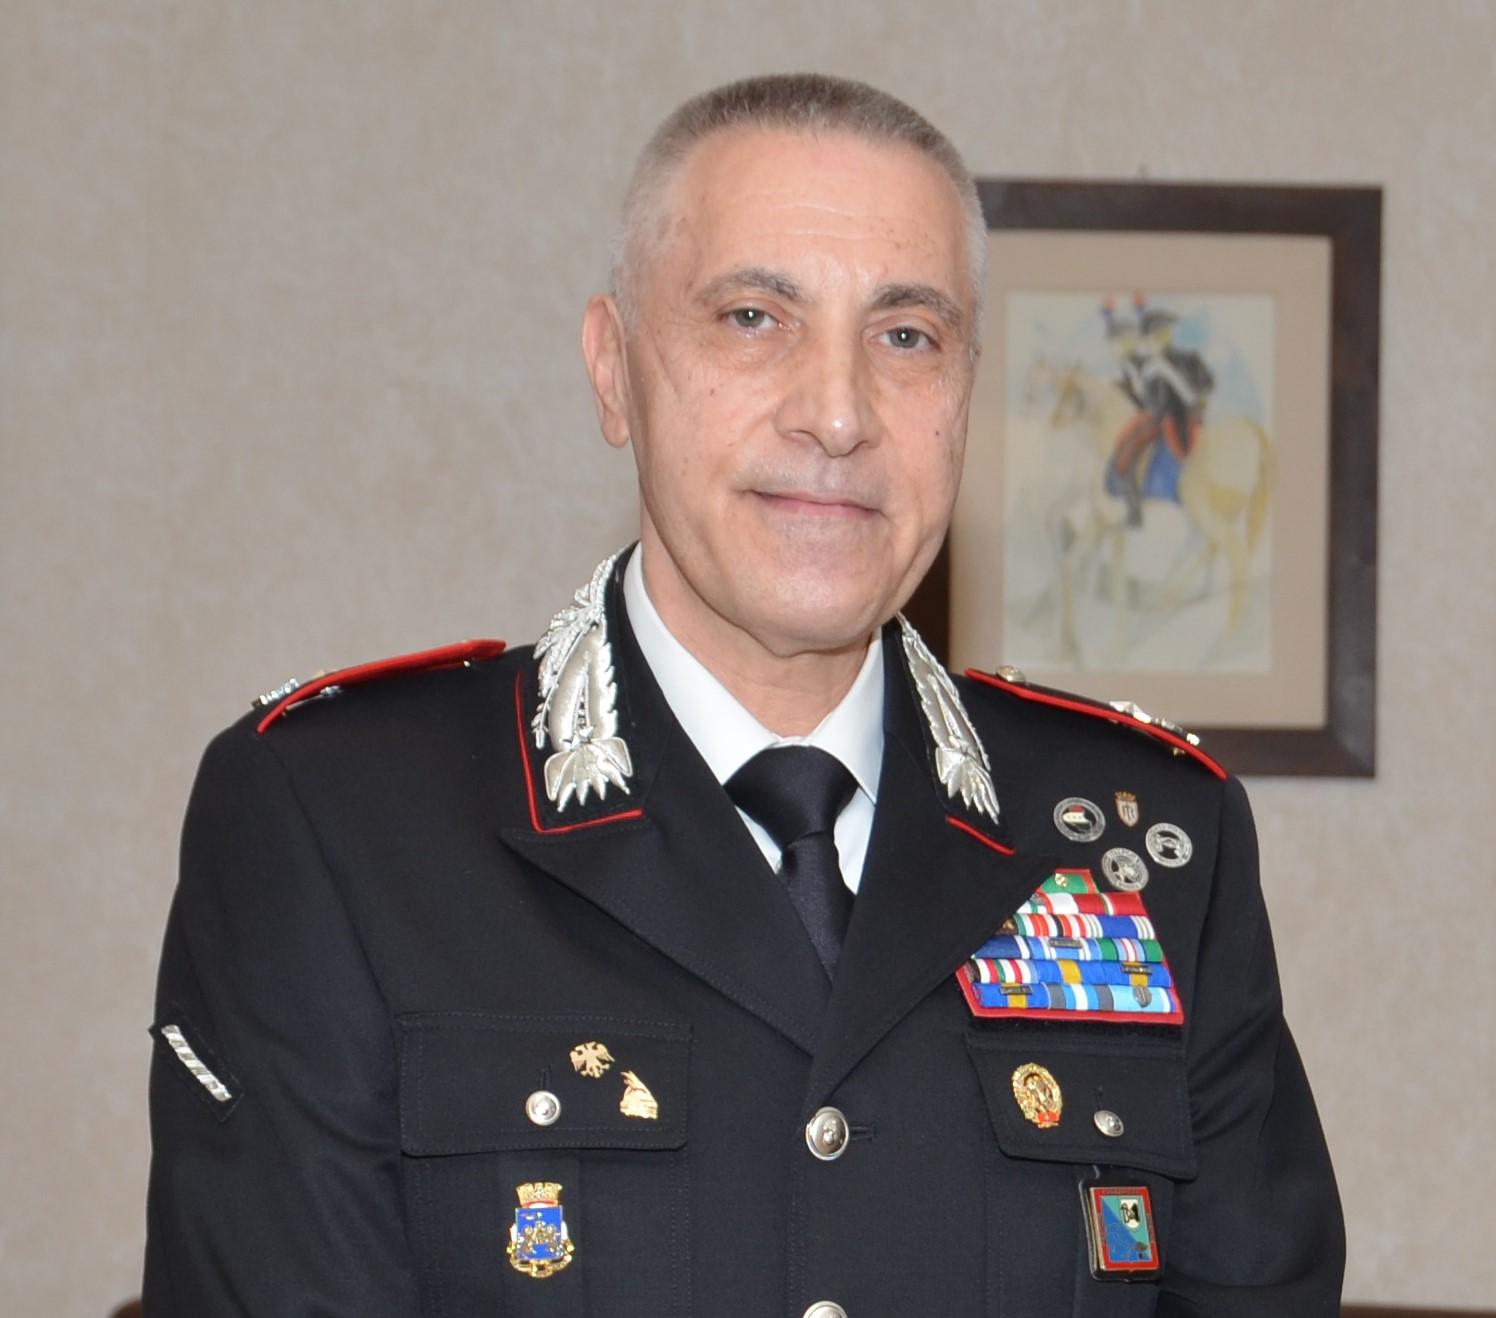 Il maggiore Fiori conclude il servizio attivo nell’Arma dei carabinieri